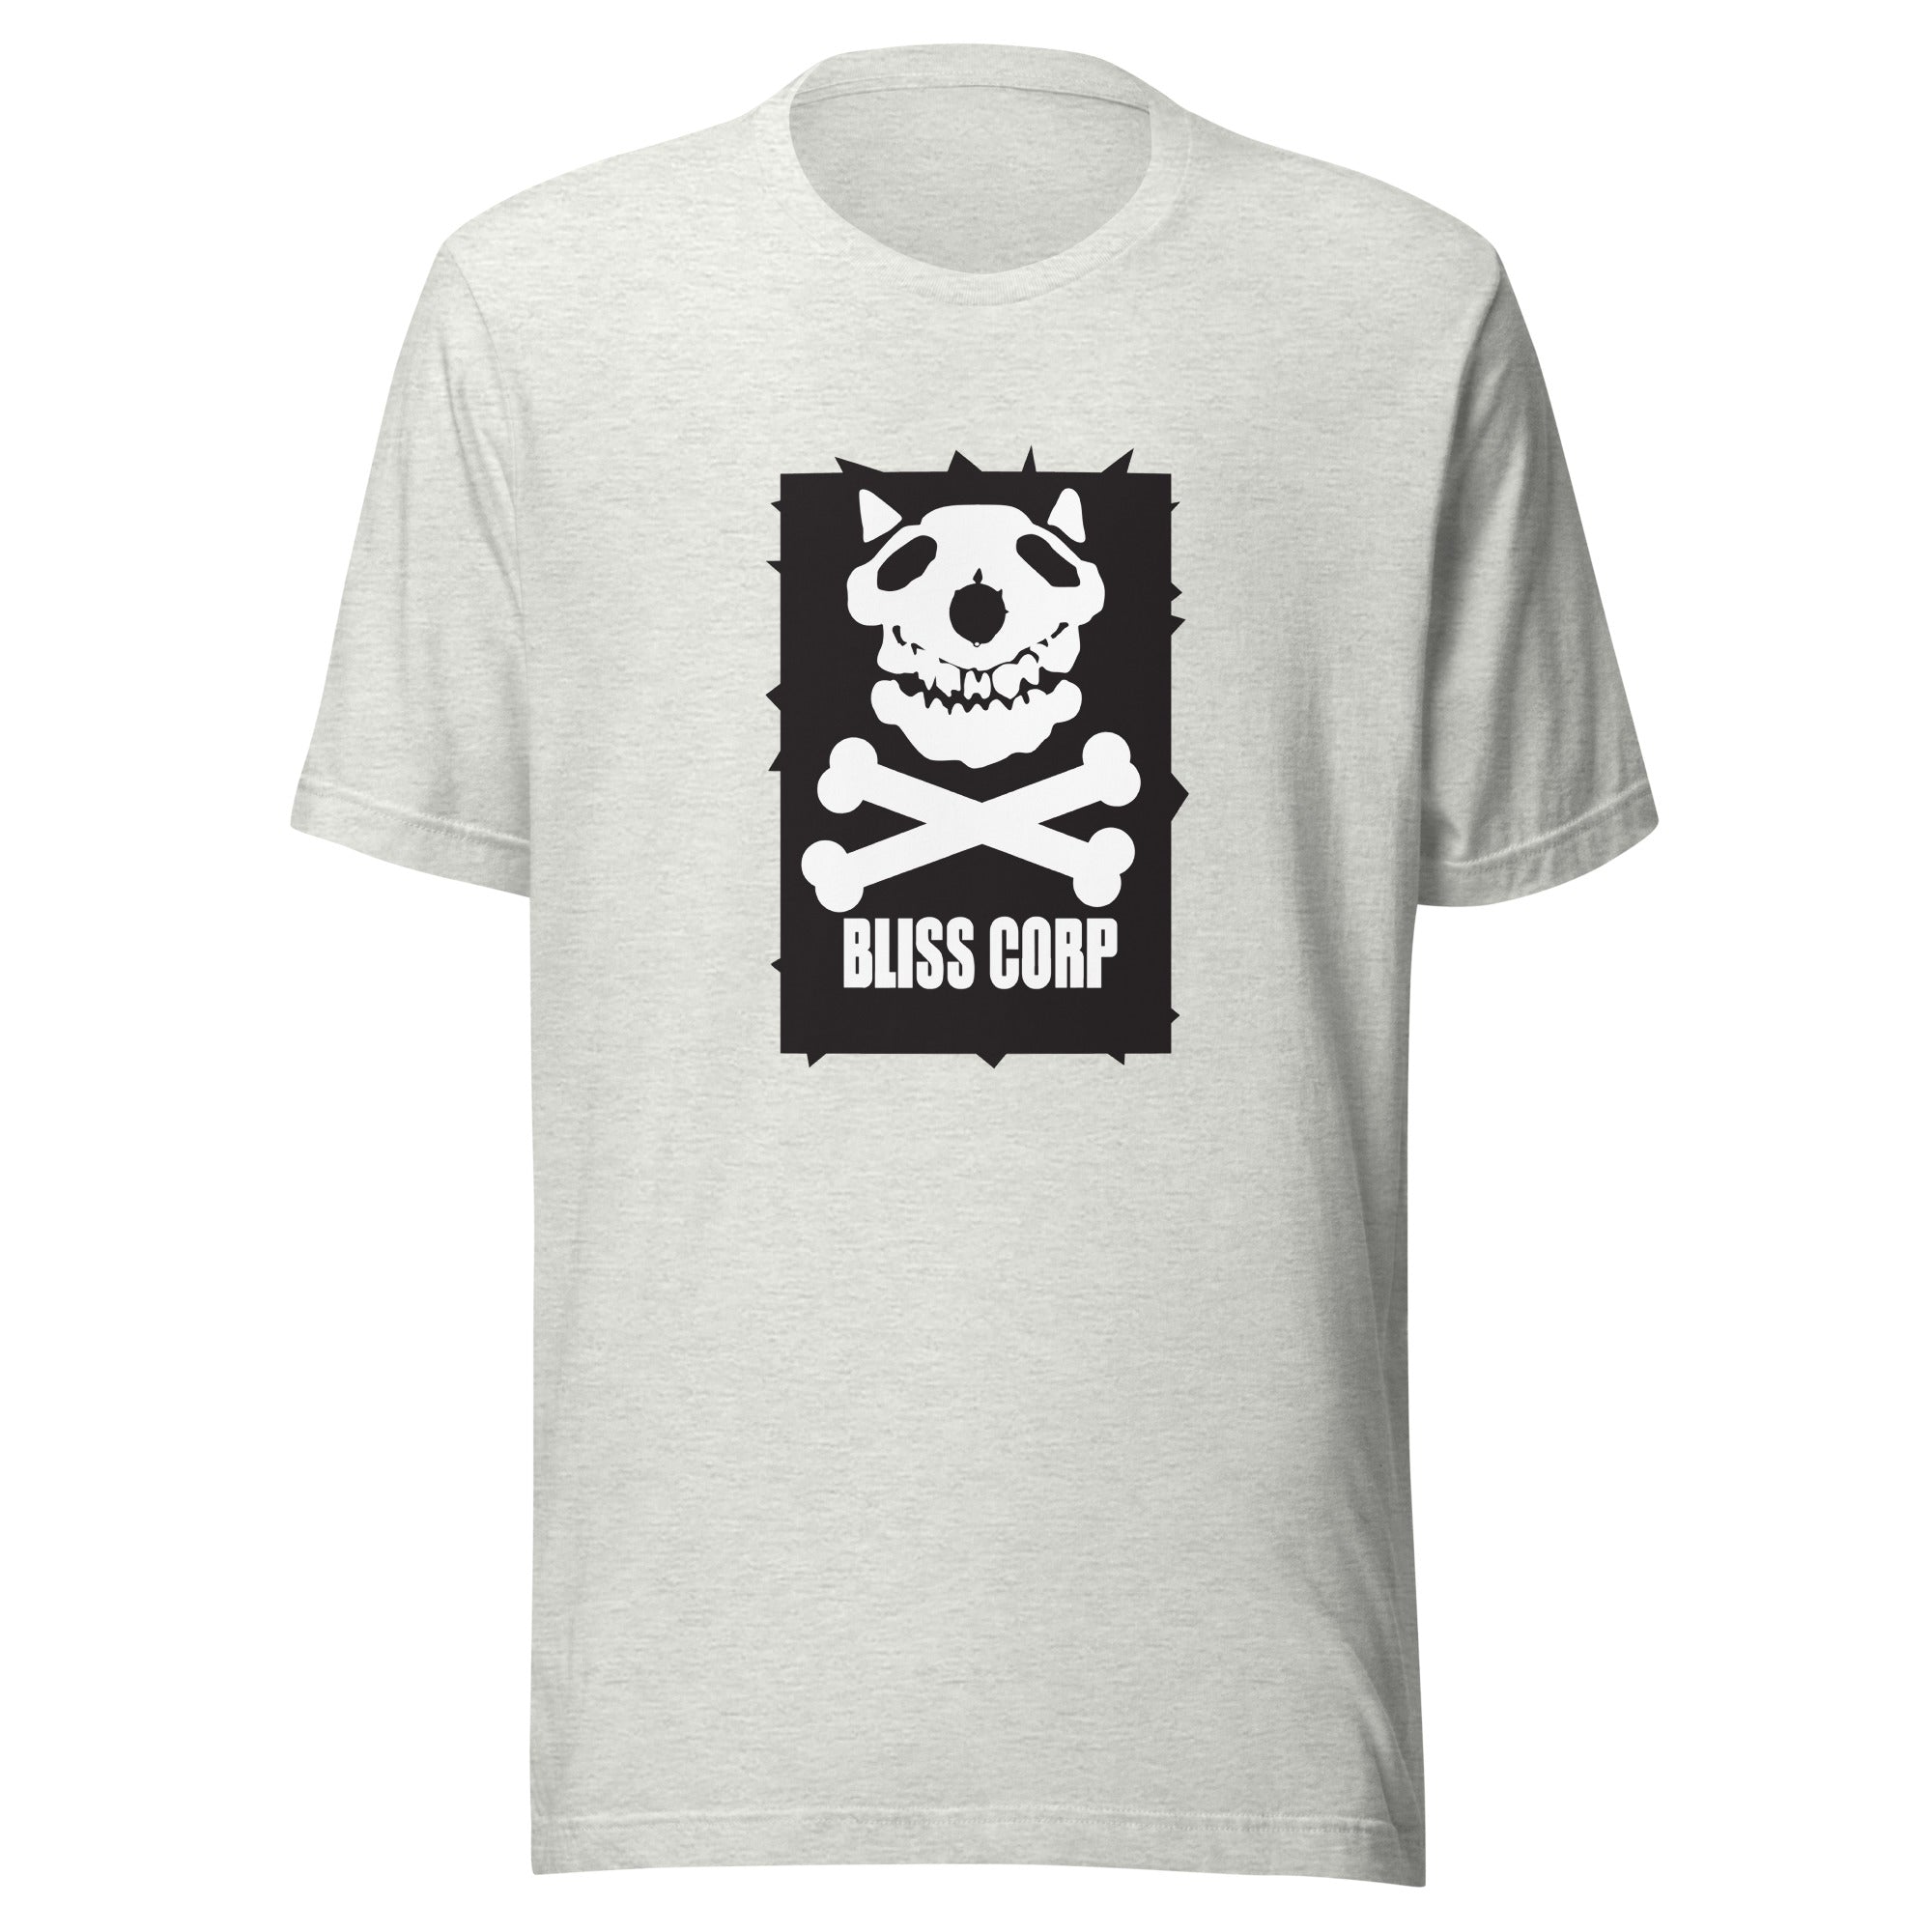 BLISSCORP | T-shirt | Bella + Canvas